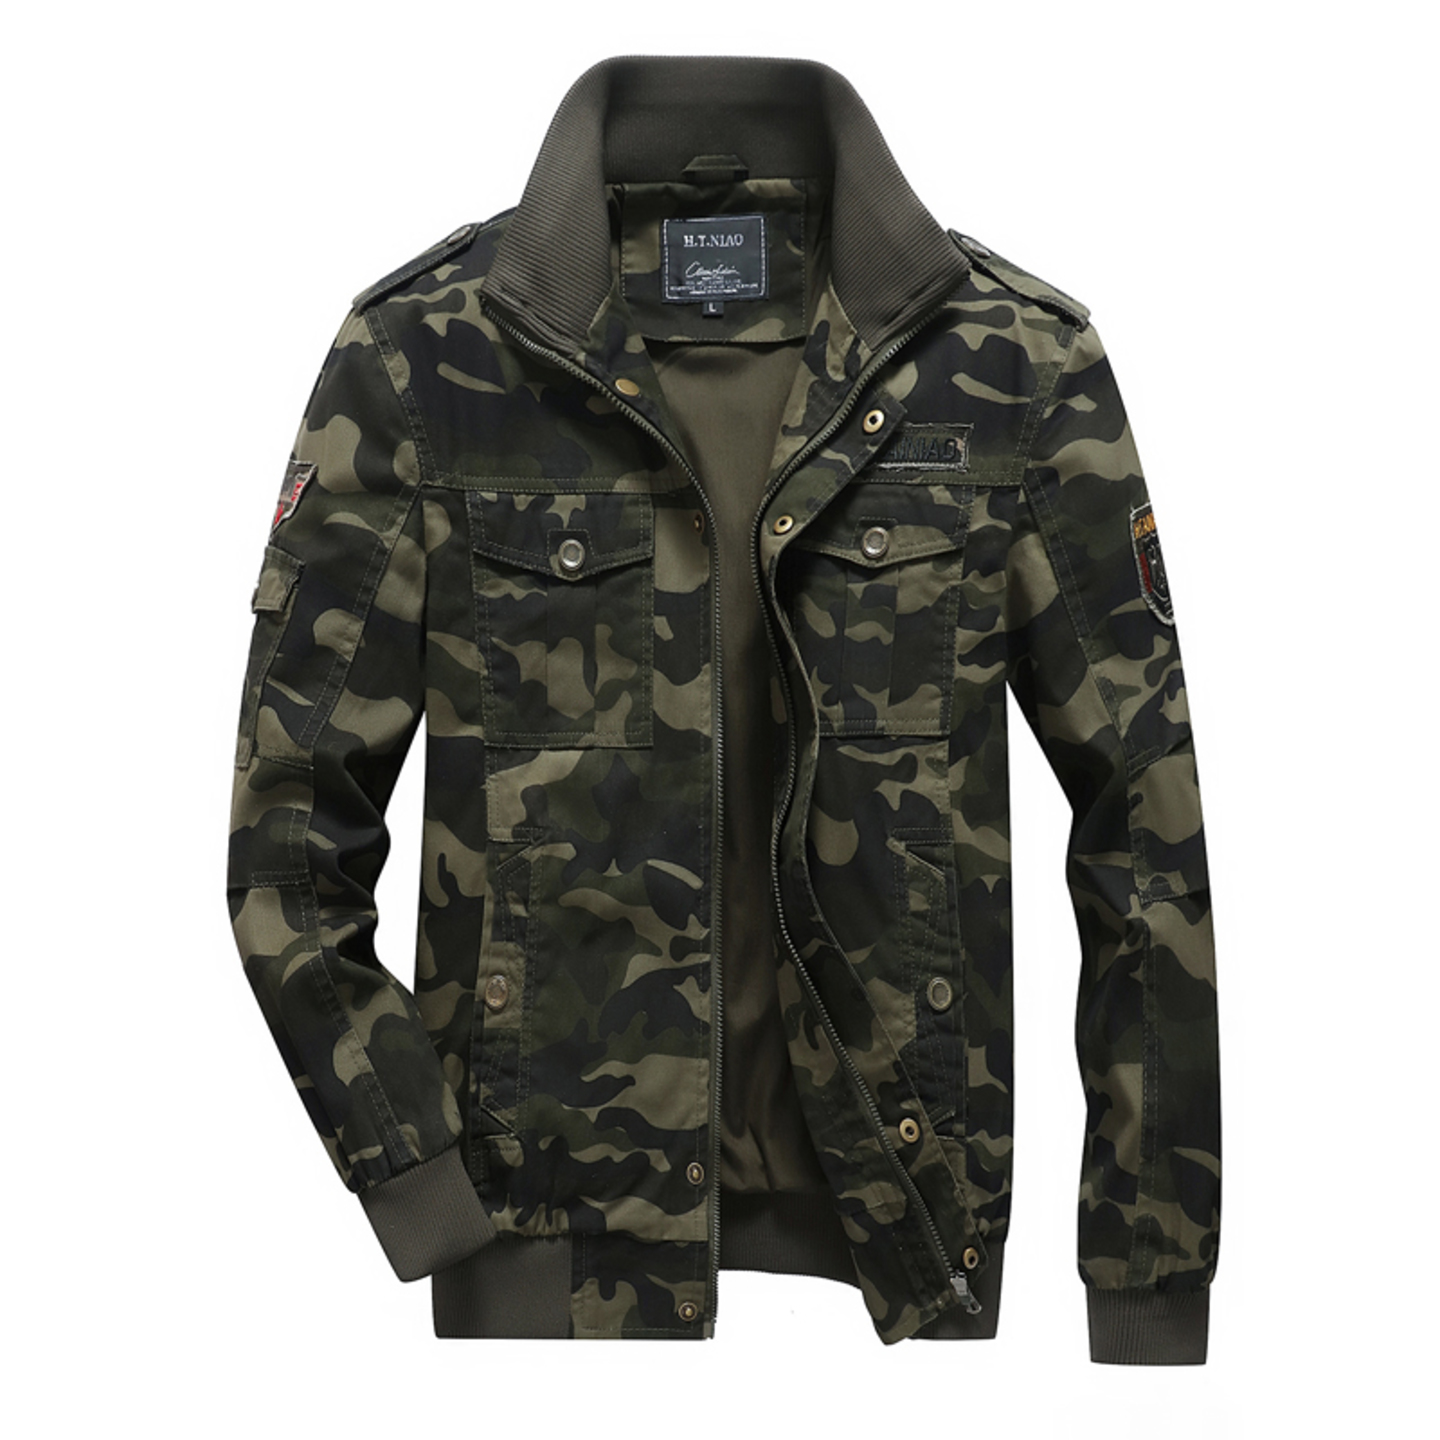 Men's Fashion Camouflage Style Jacket